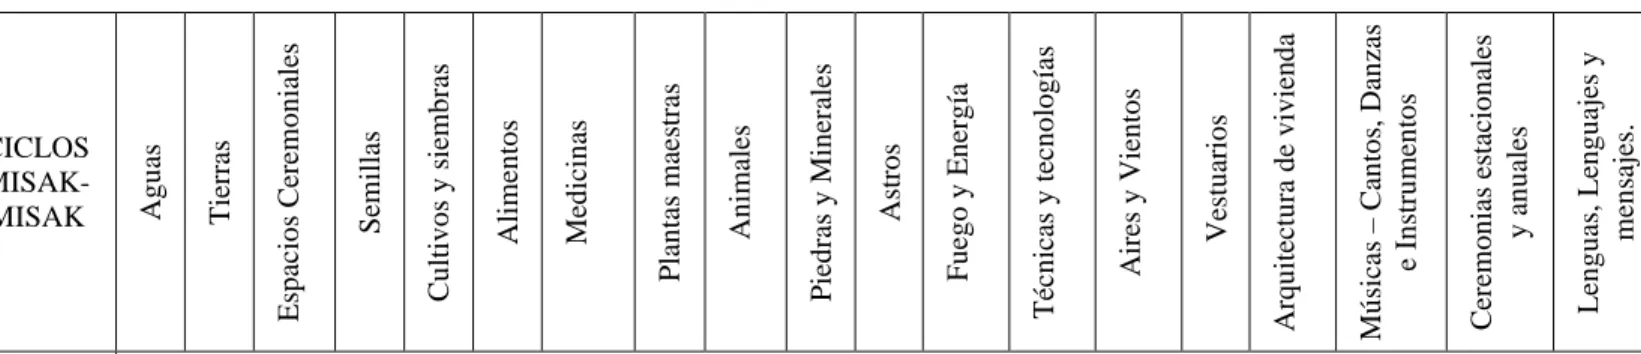 Tabla 2. Matriz 1. Análisis intergeneracional y tendencial de la vitalidad del Kaampáwam como principio de orden y salud integral Misak-Misak en su 